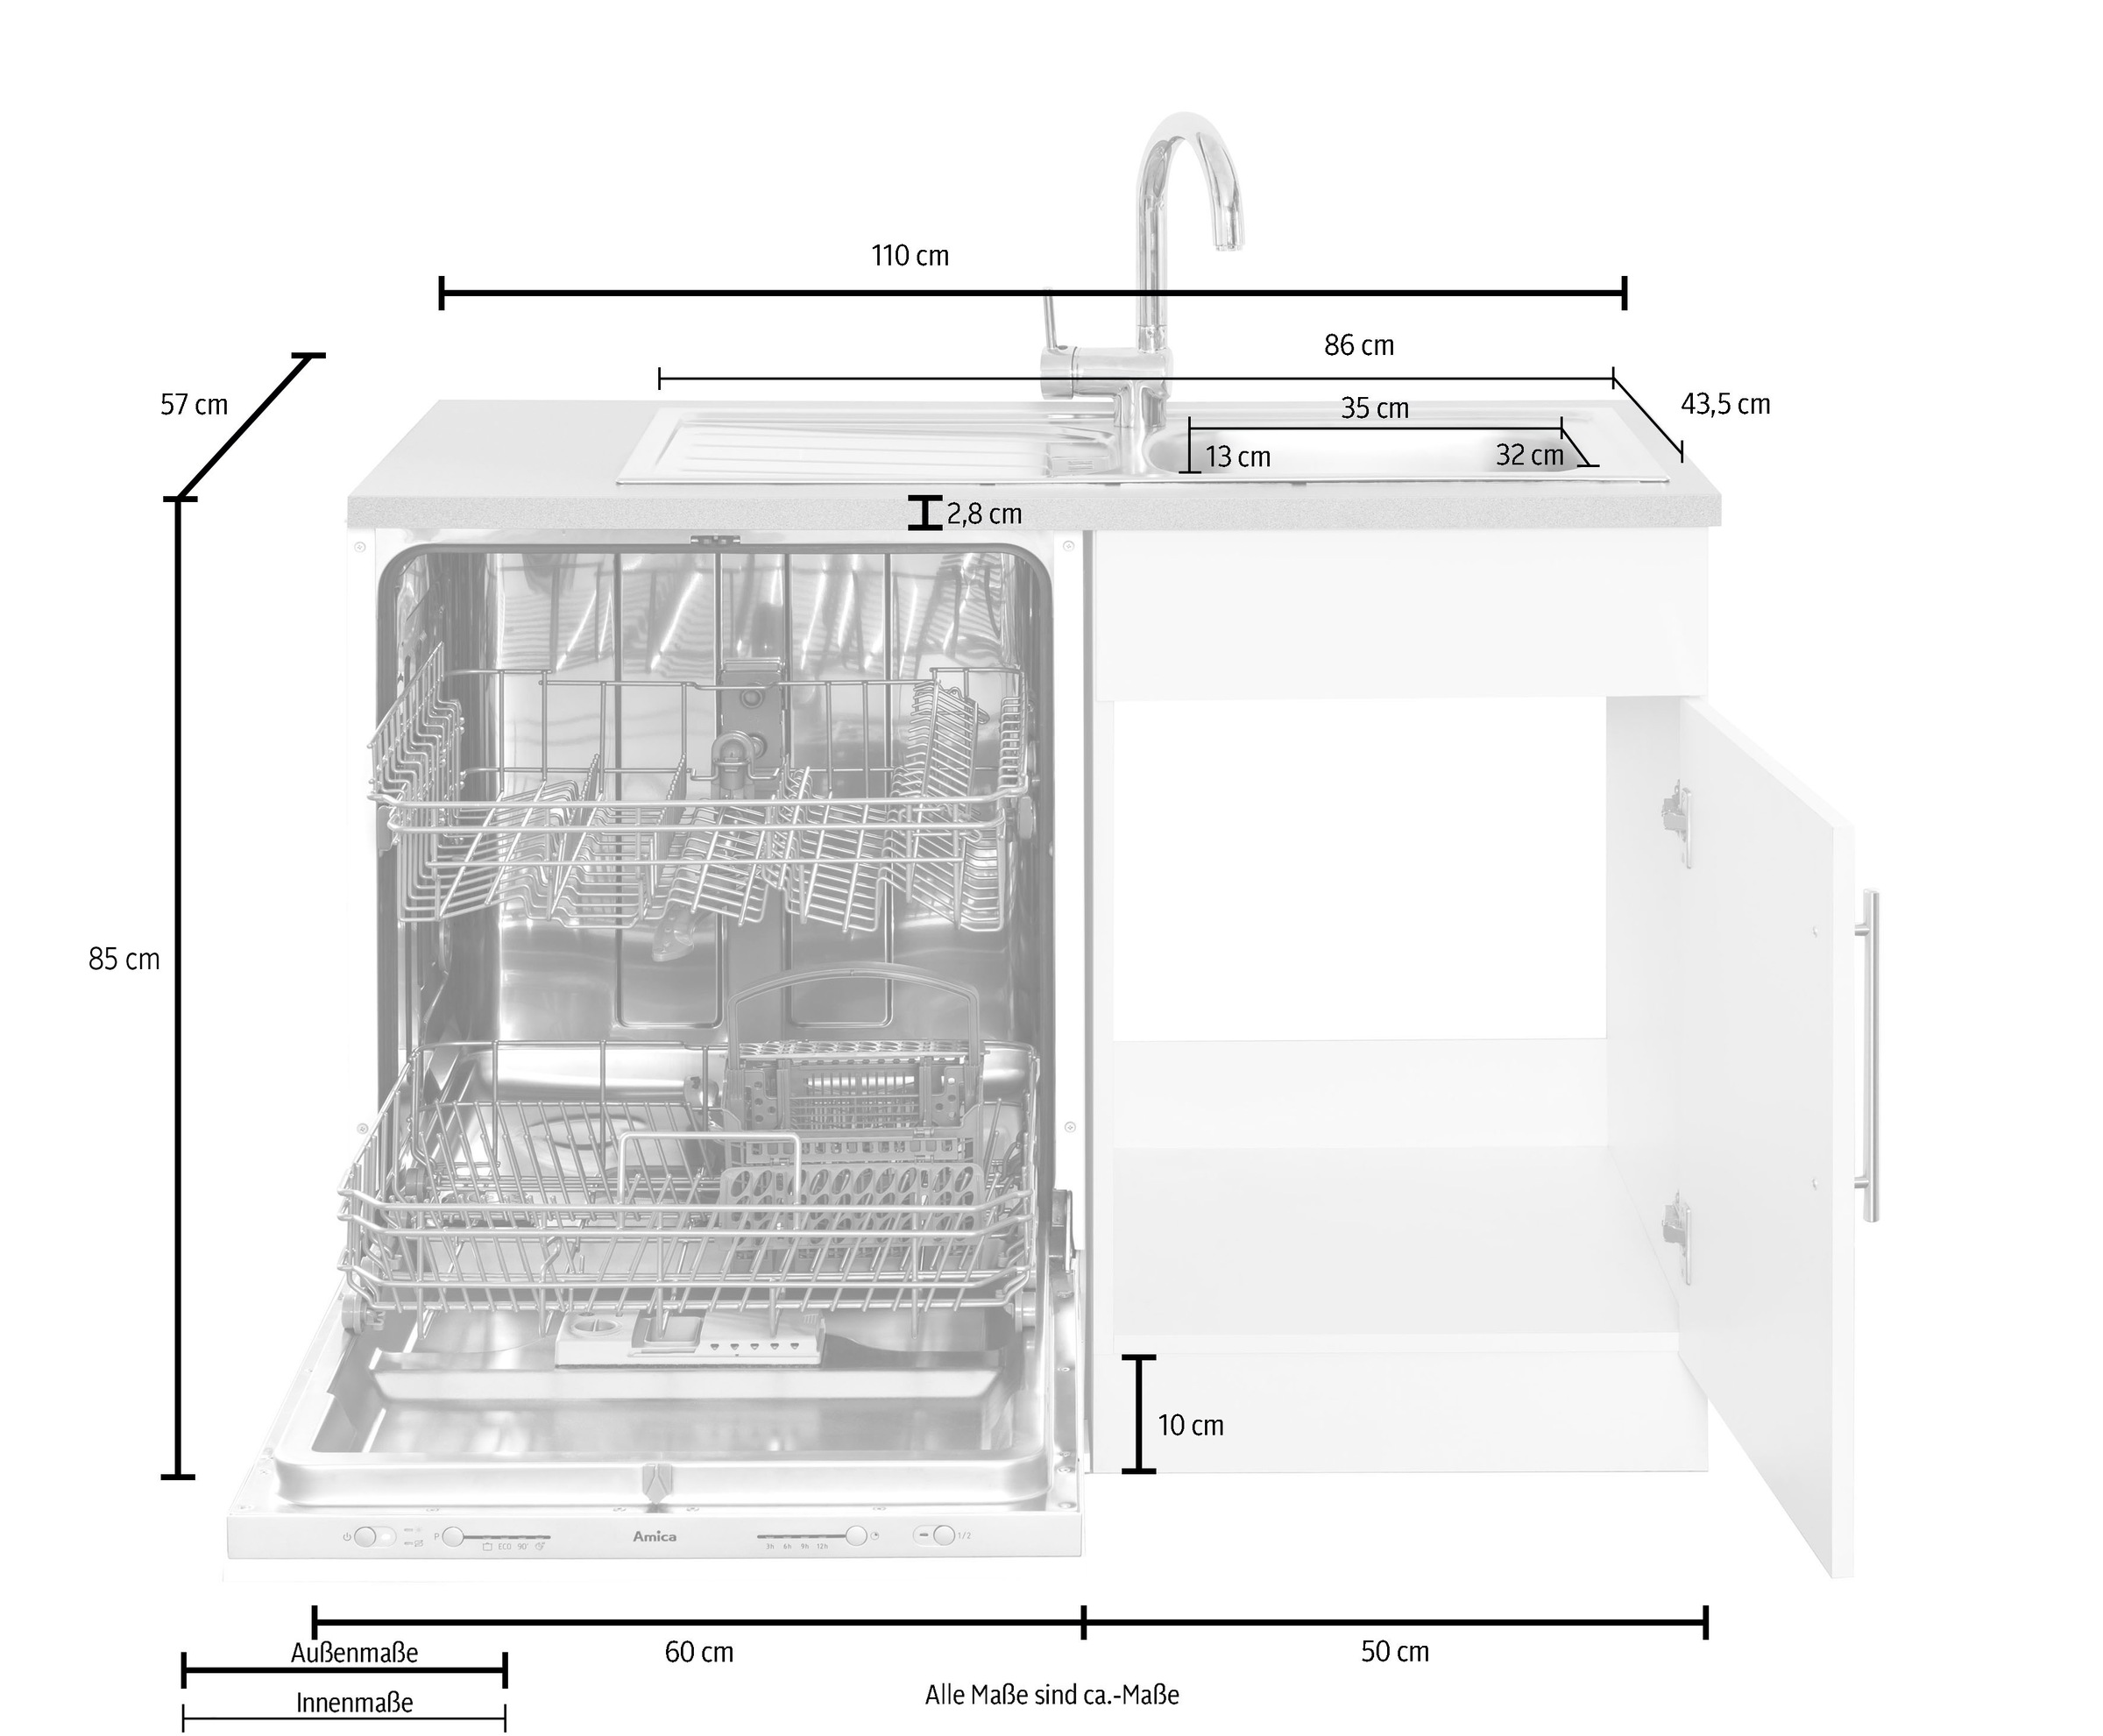 wiho Küchen Winkelküche »Cali«, ohne E-Geräte, Stellbreite 280 x 170 cm  kaufen bei OTTO